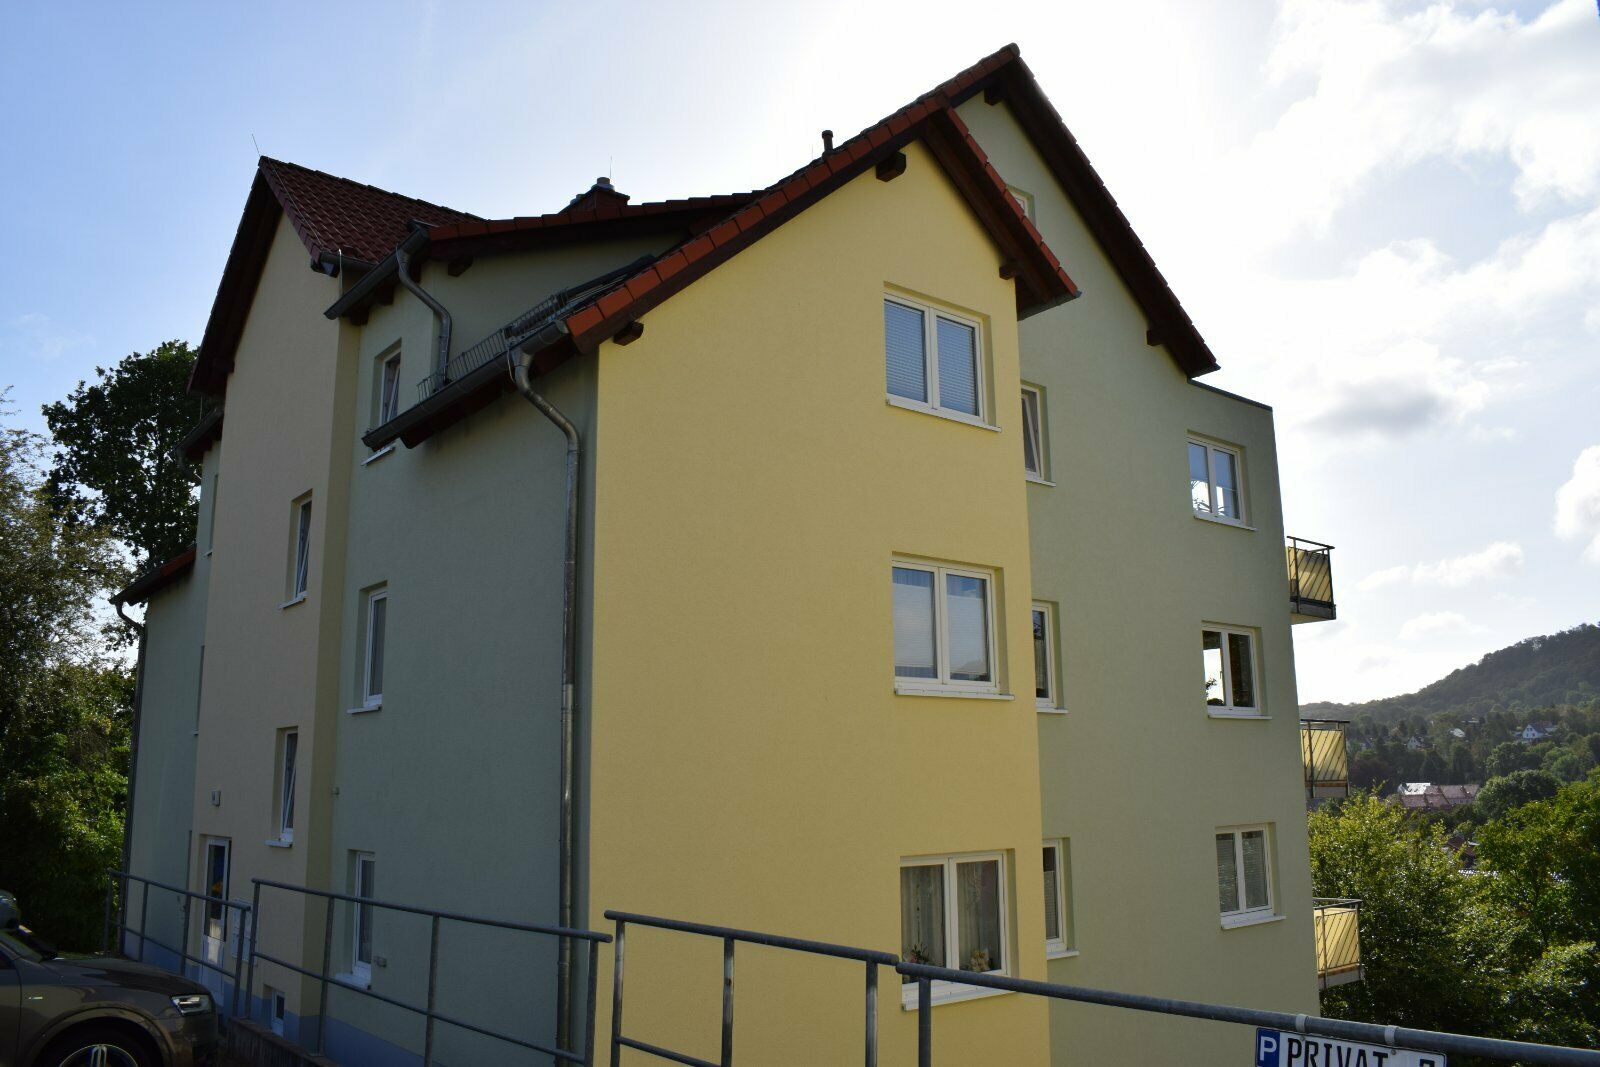 3 Zimmer Wohnung Zum Verkauf 99706 Thuringen Sondershausen Mapio Net